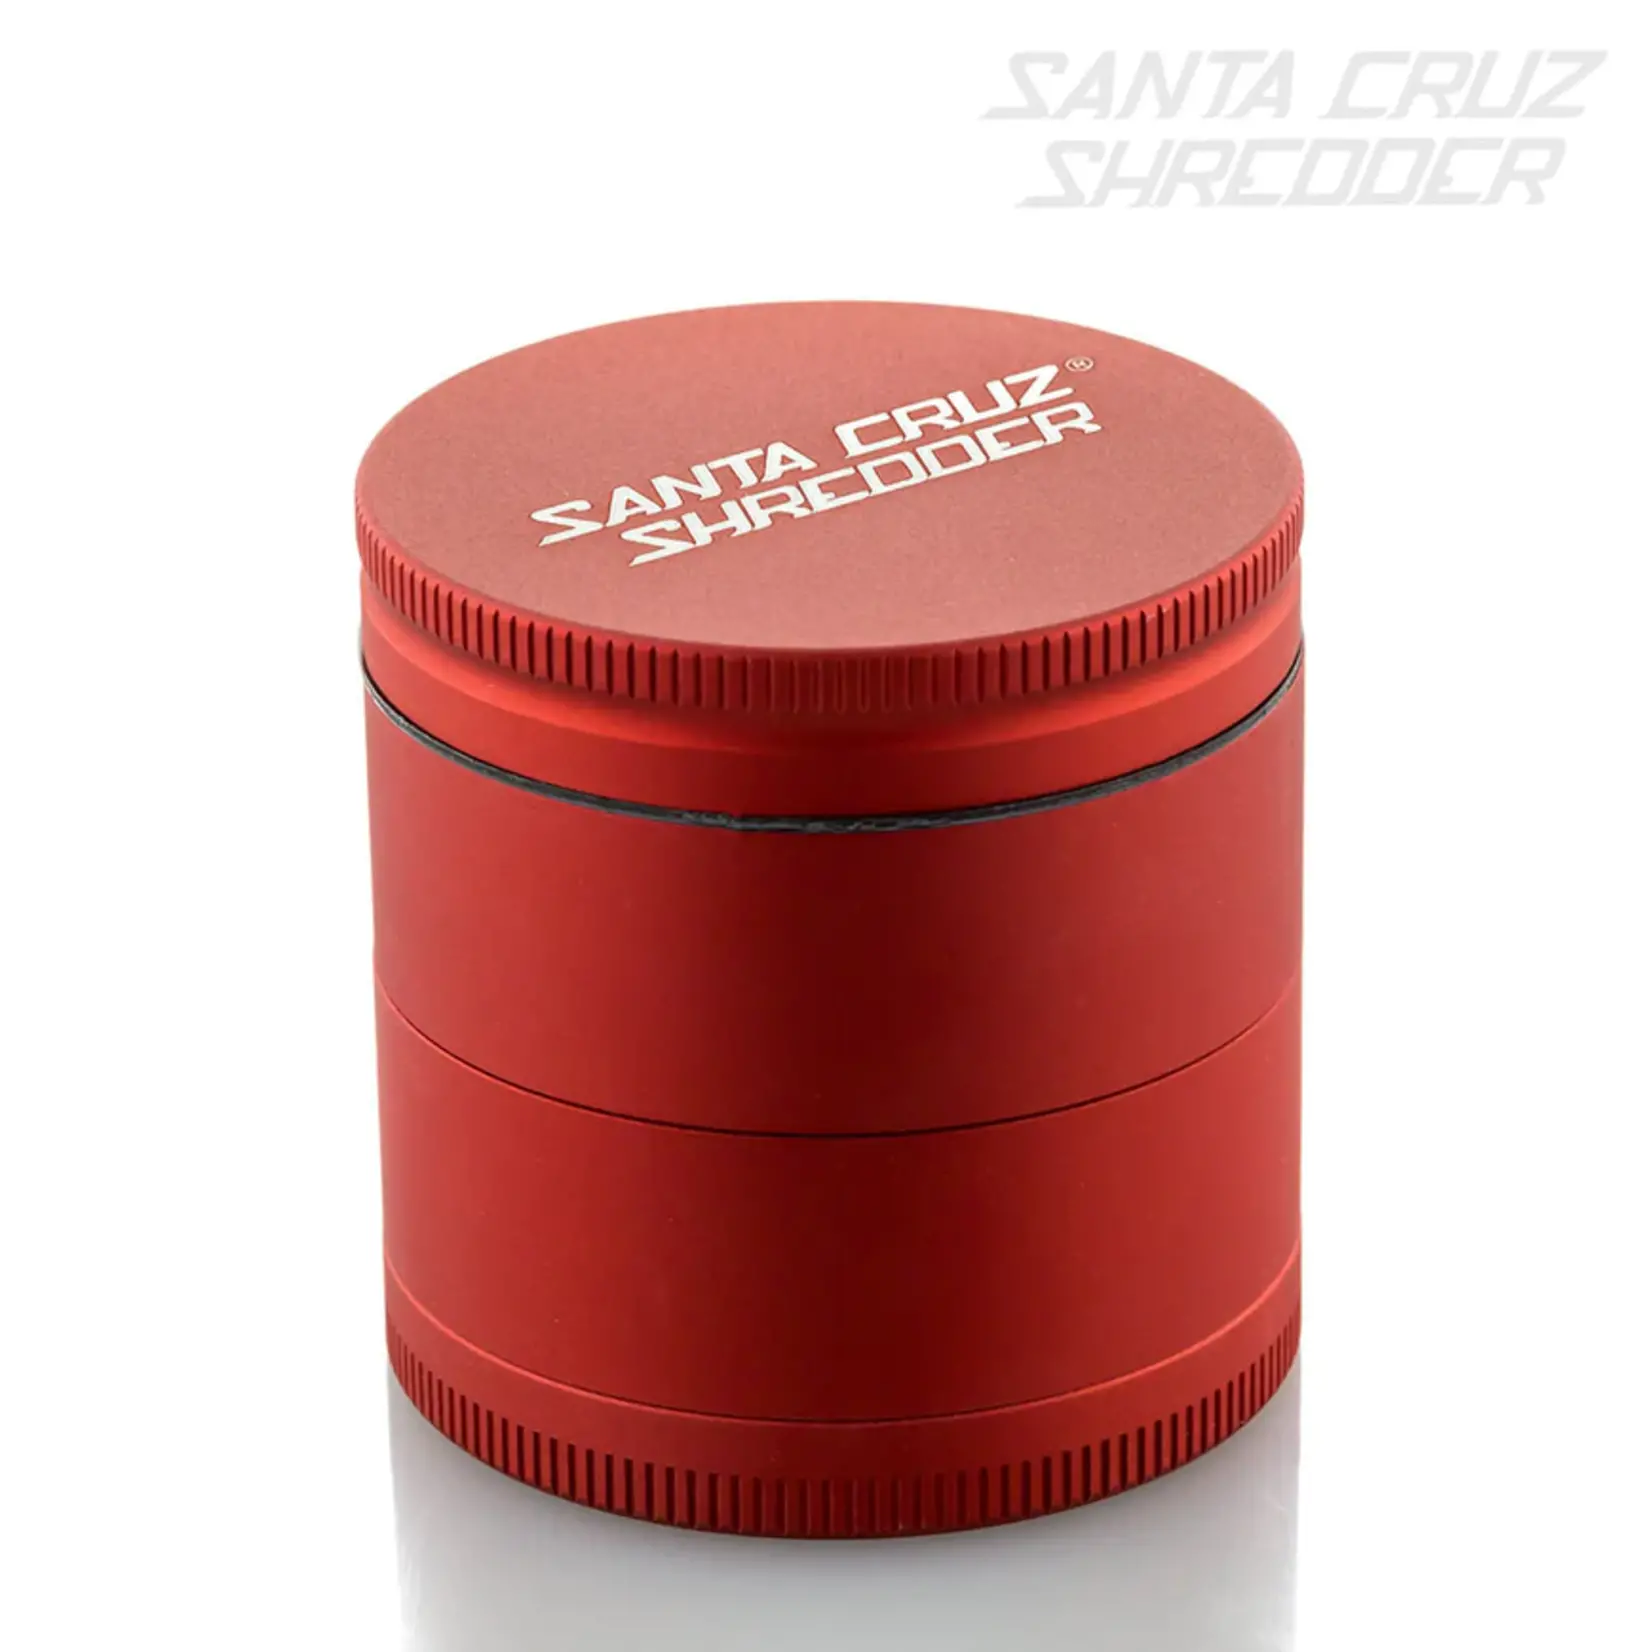 Santa Cruz Shredder Medium 4-Piece Grinder